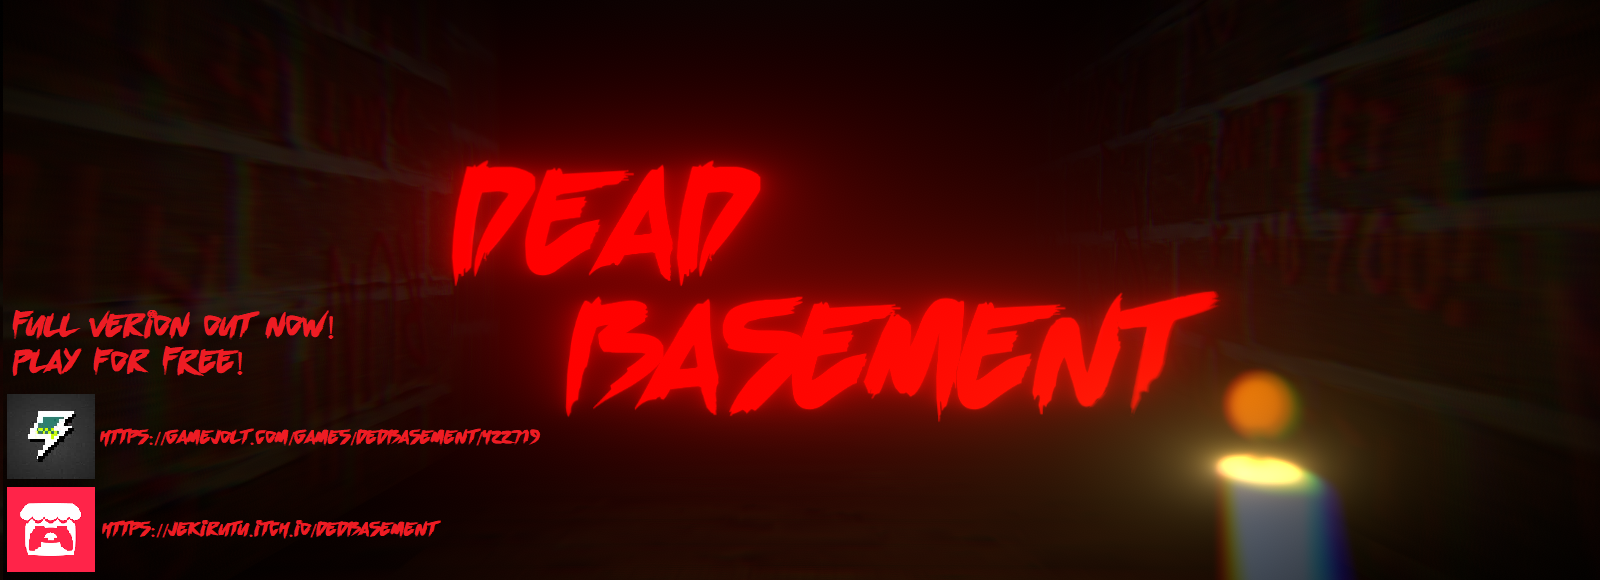 Dead basement